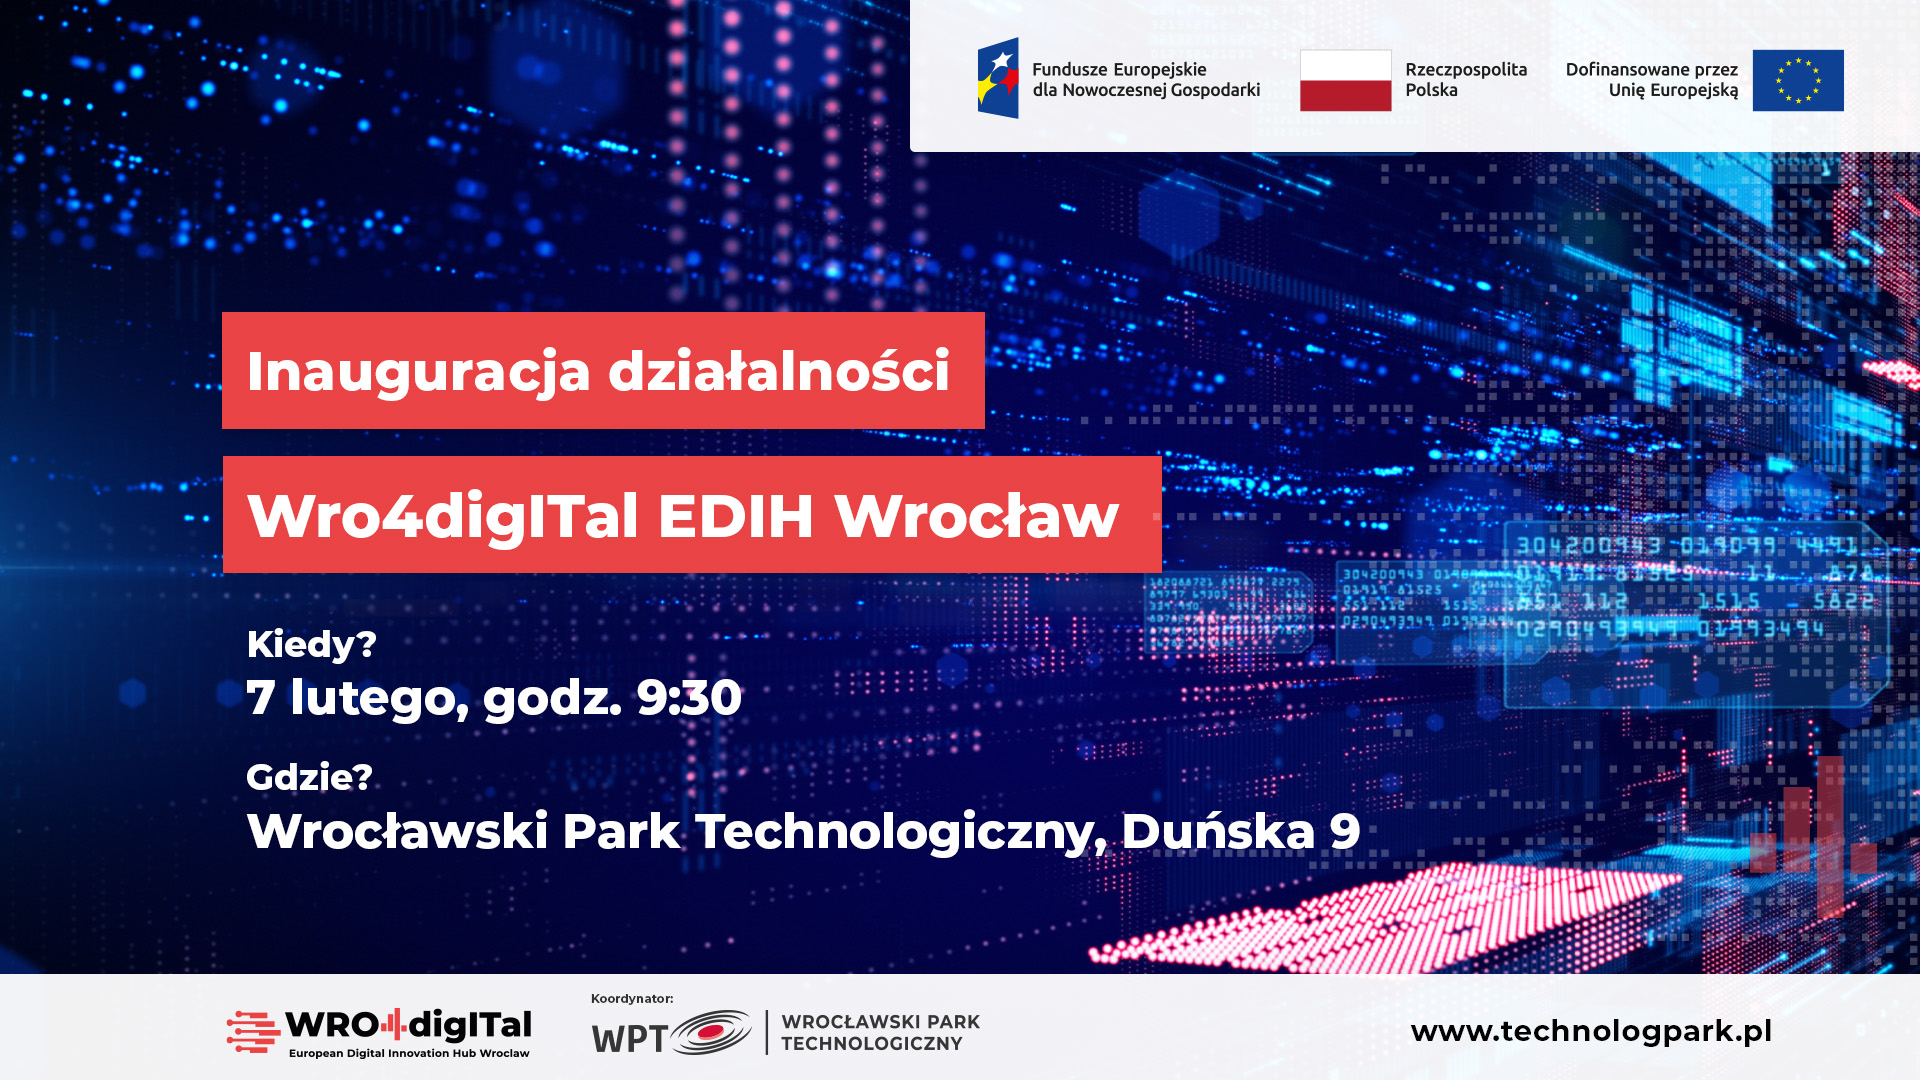 Zapraszamy na konferencję inaugurującą działalność WRO4digITal EDIH Wrocław!